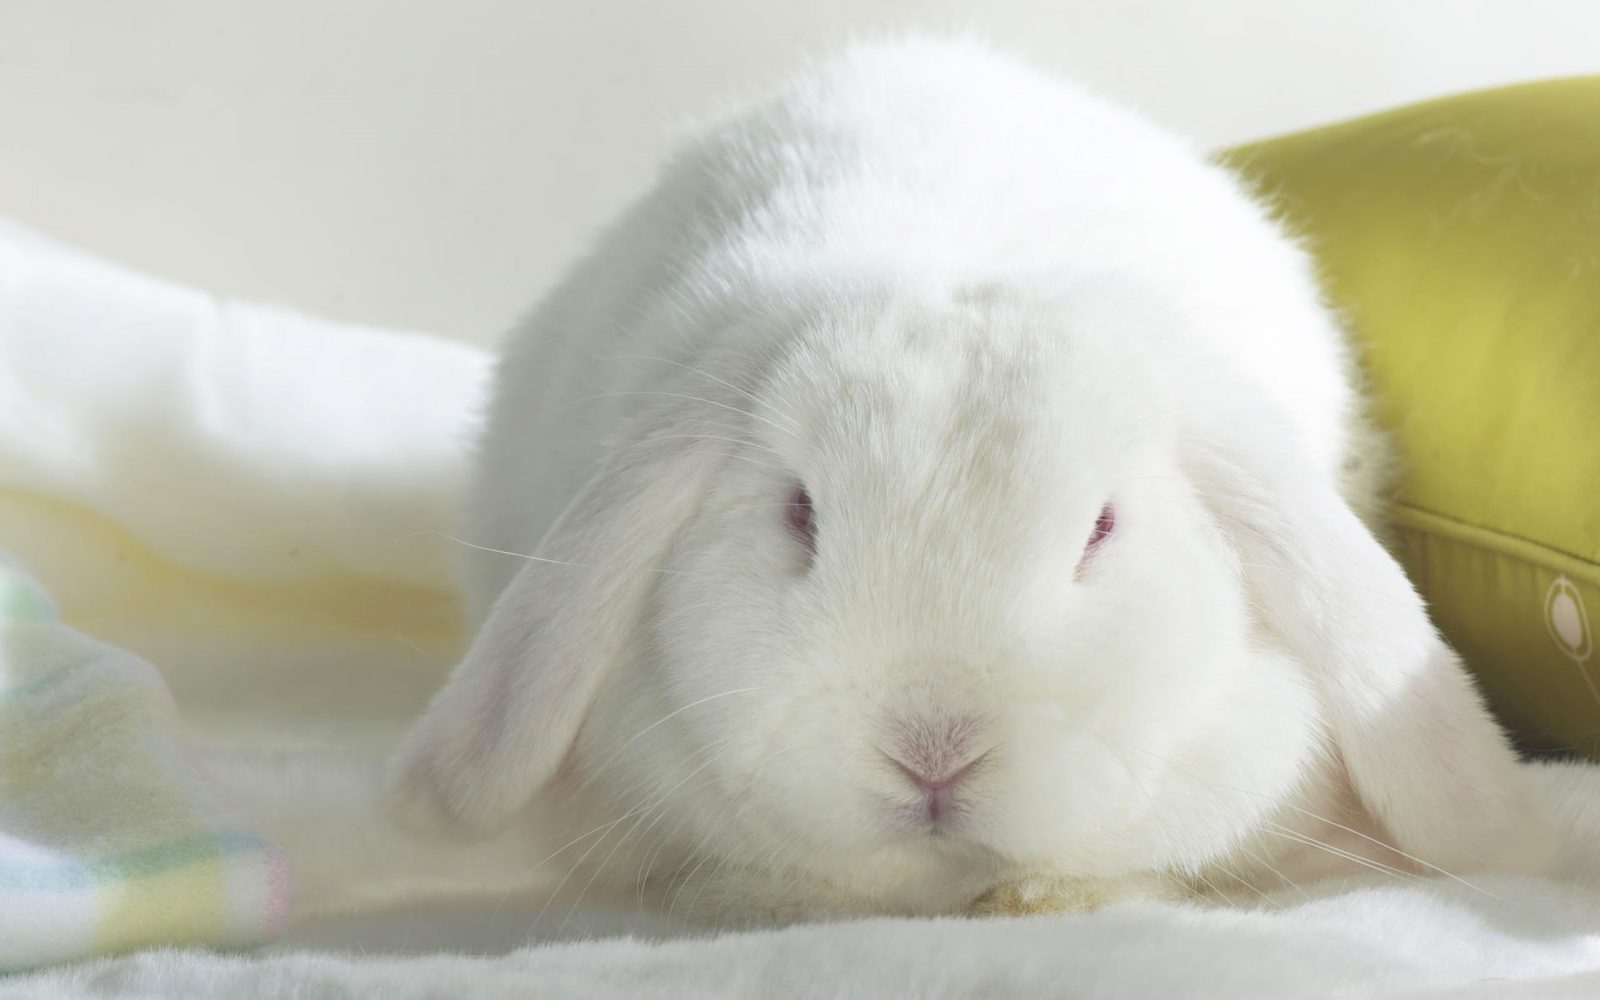 Foto de un conejo blanco